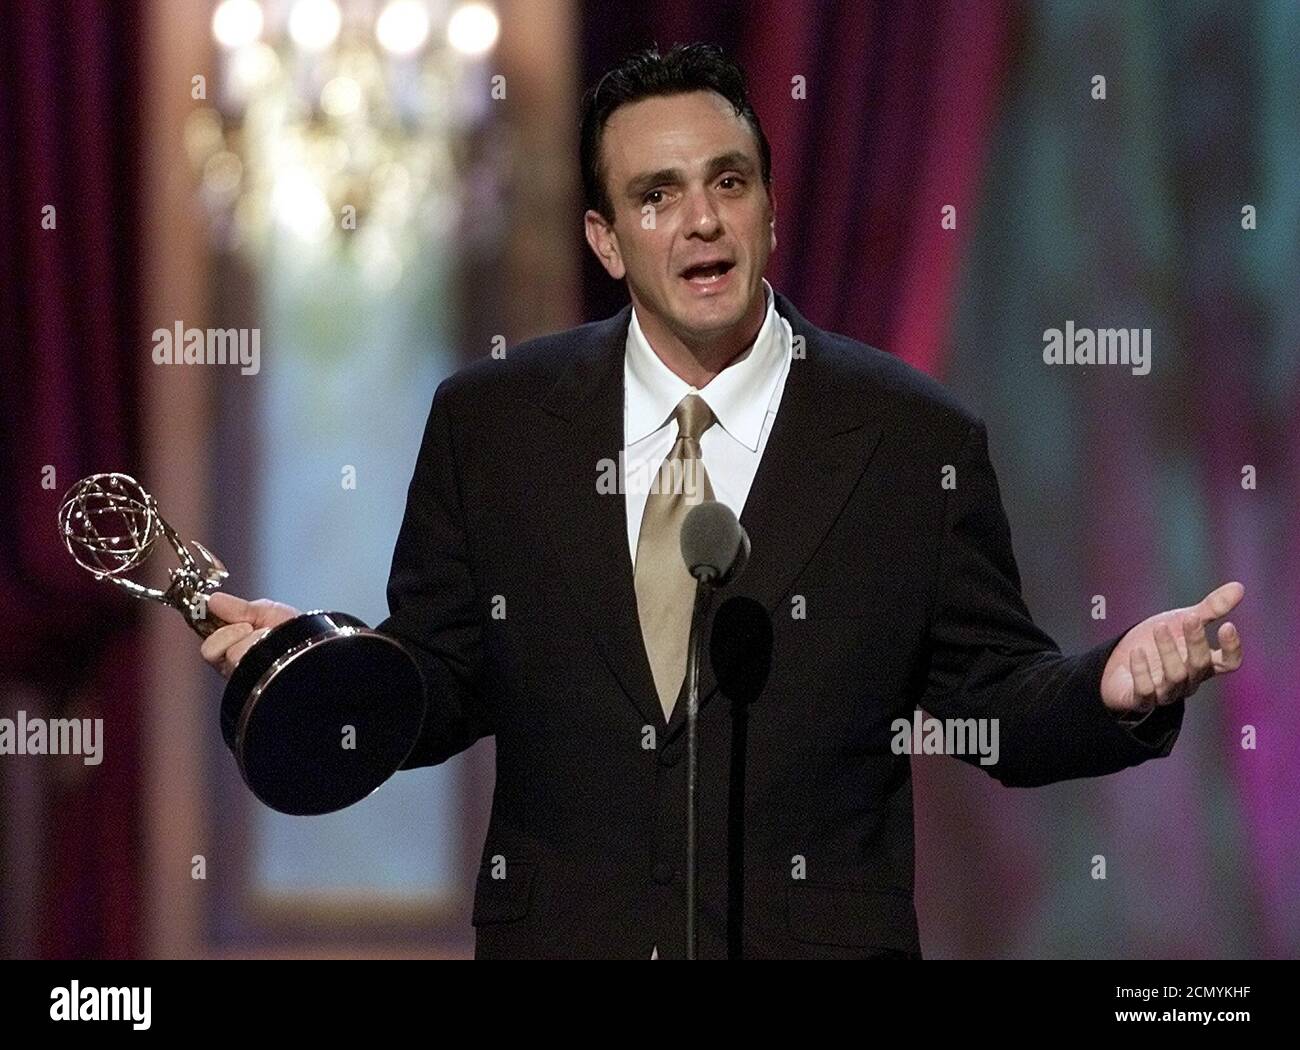 Schauspieler Hank Azaria nimmt seinen Emmy für herausragende Voiceover-Performance für die Fernsehshow "The Simpsons" während der Creative Arts Emmy Awards am 8. September 2001 in Pasadena, Kalifornien, entgegen. REUTERS/Adrees Latif REUTERS AL Stockfoto